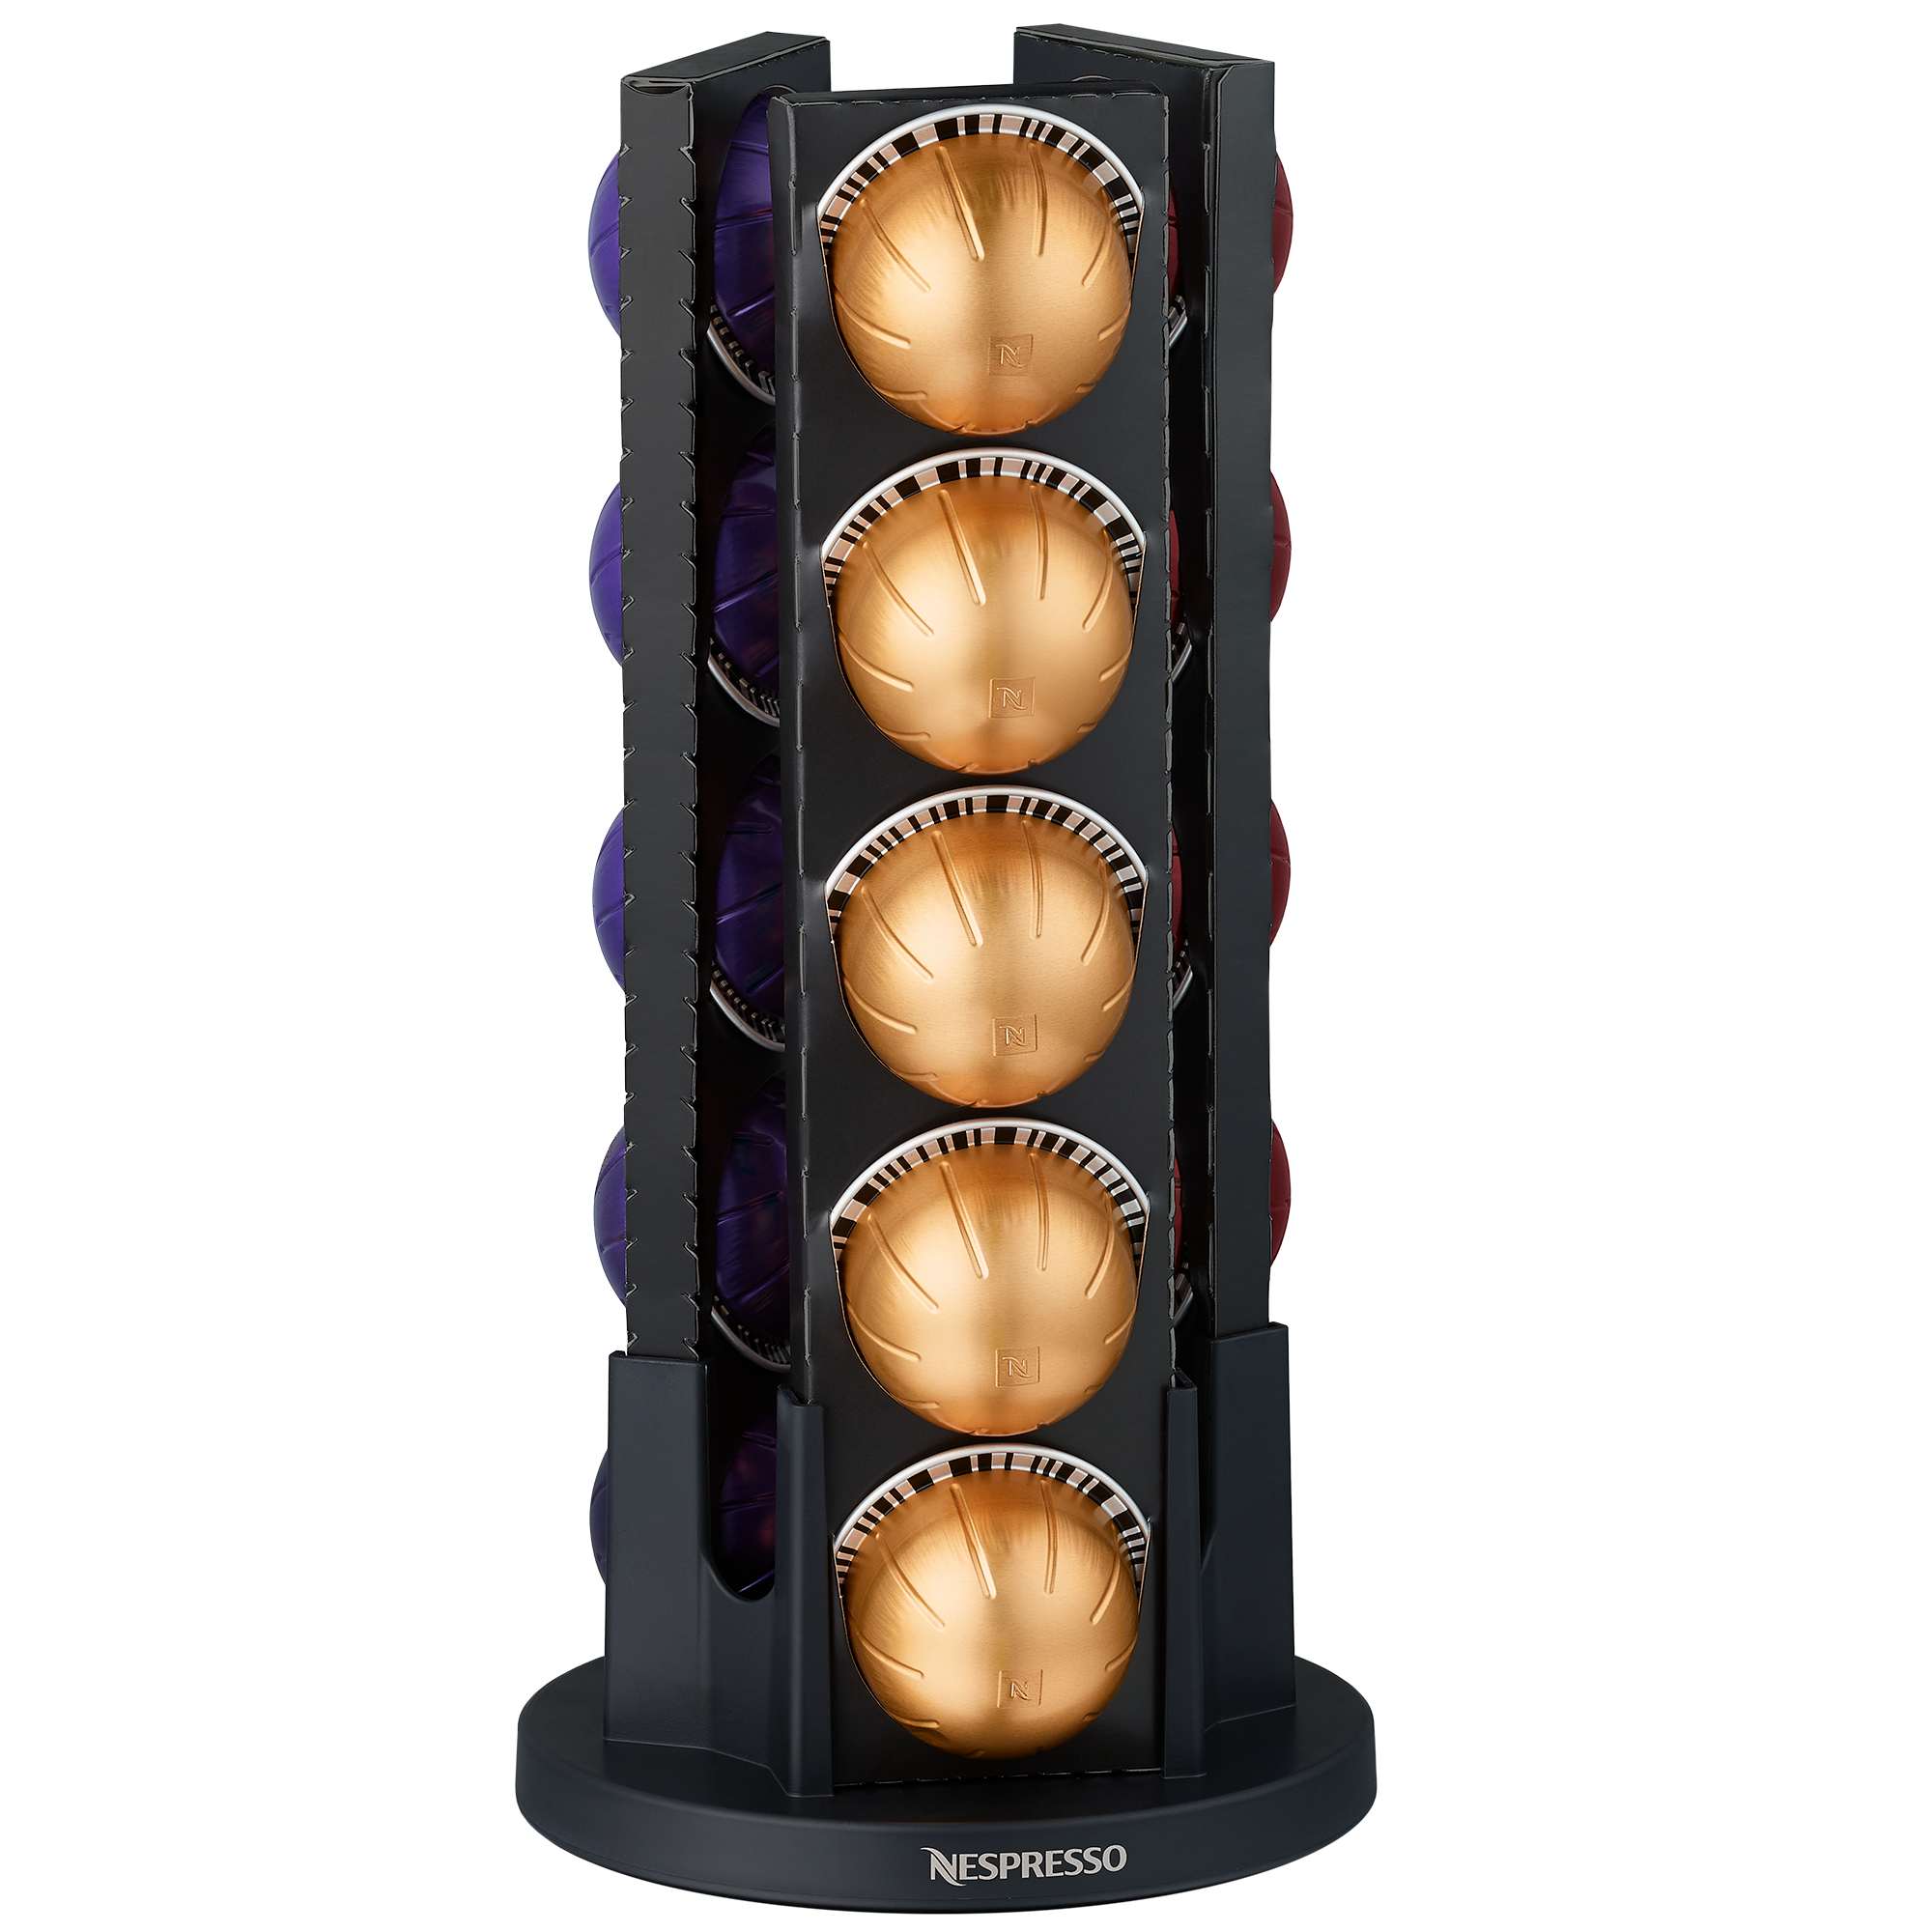 R&R SHOP - Porte-capsules pour Nespresso Vertuo, surface type mur,  réfrigérateur pour café Vertuo avec autocollants 3M, 4 capsules chacune,  lot de 2